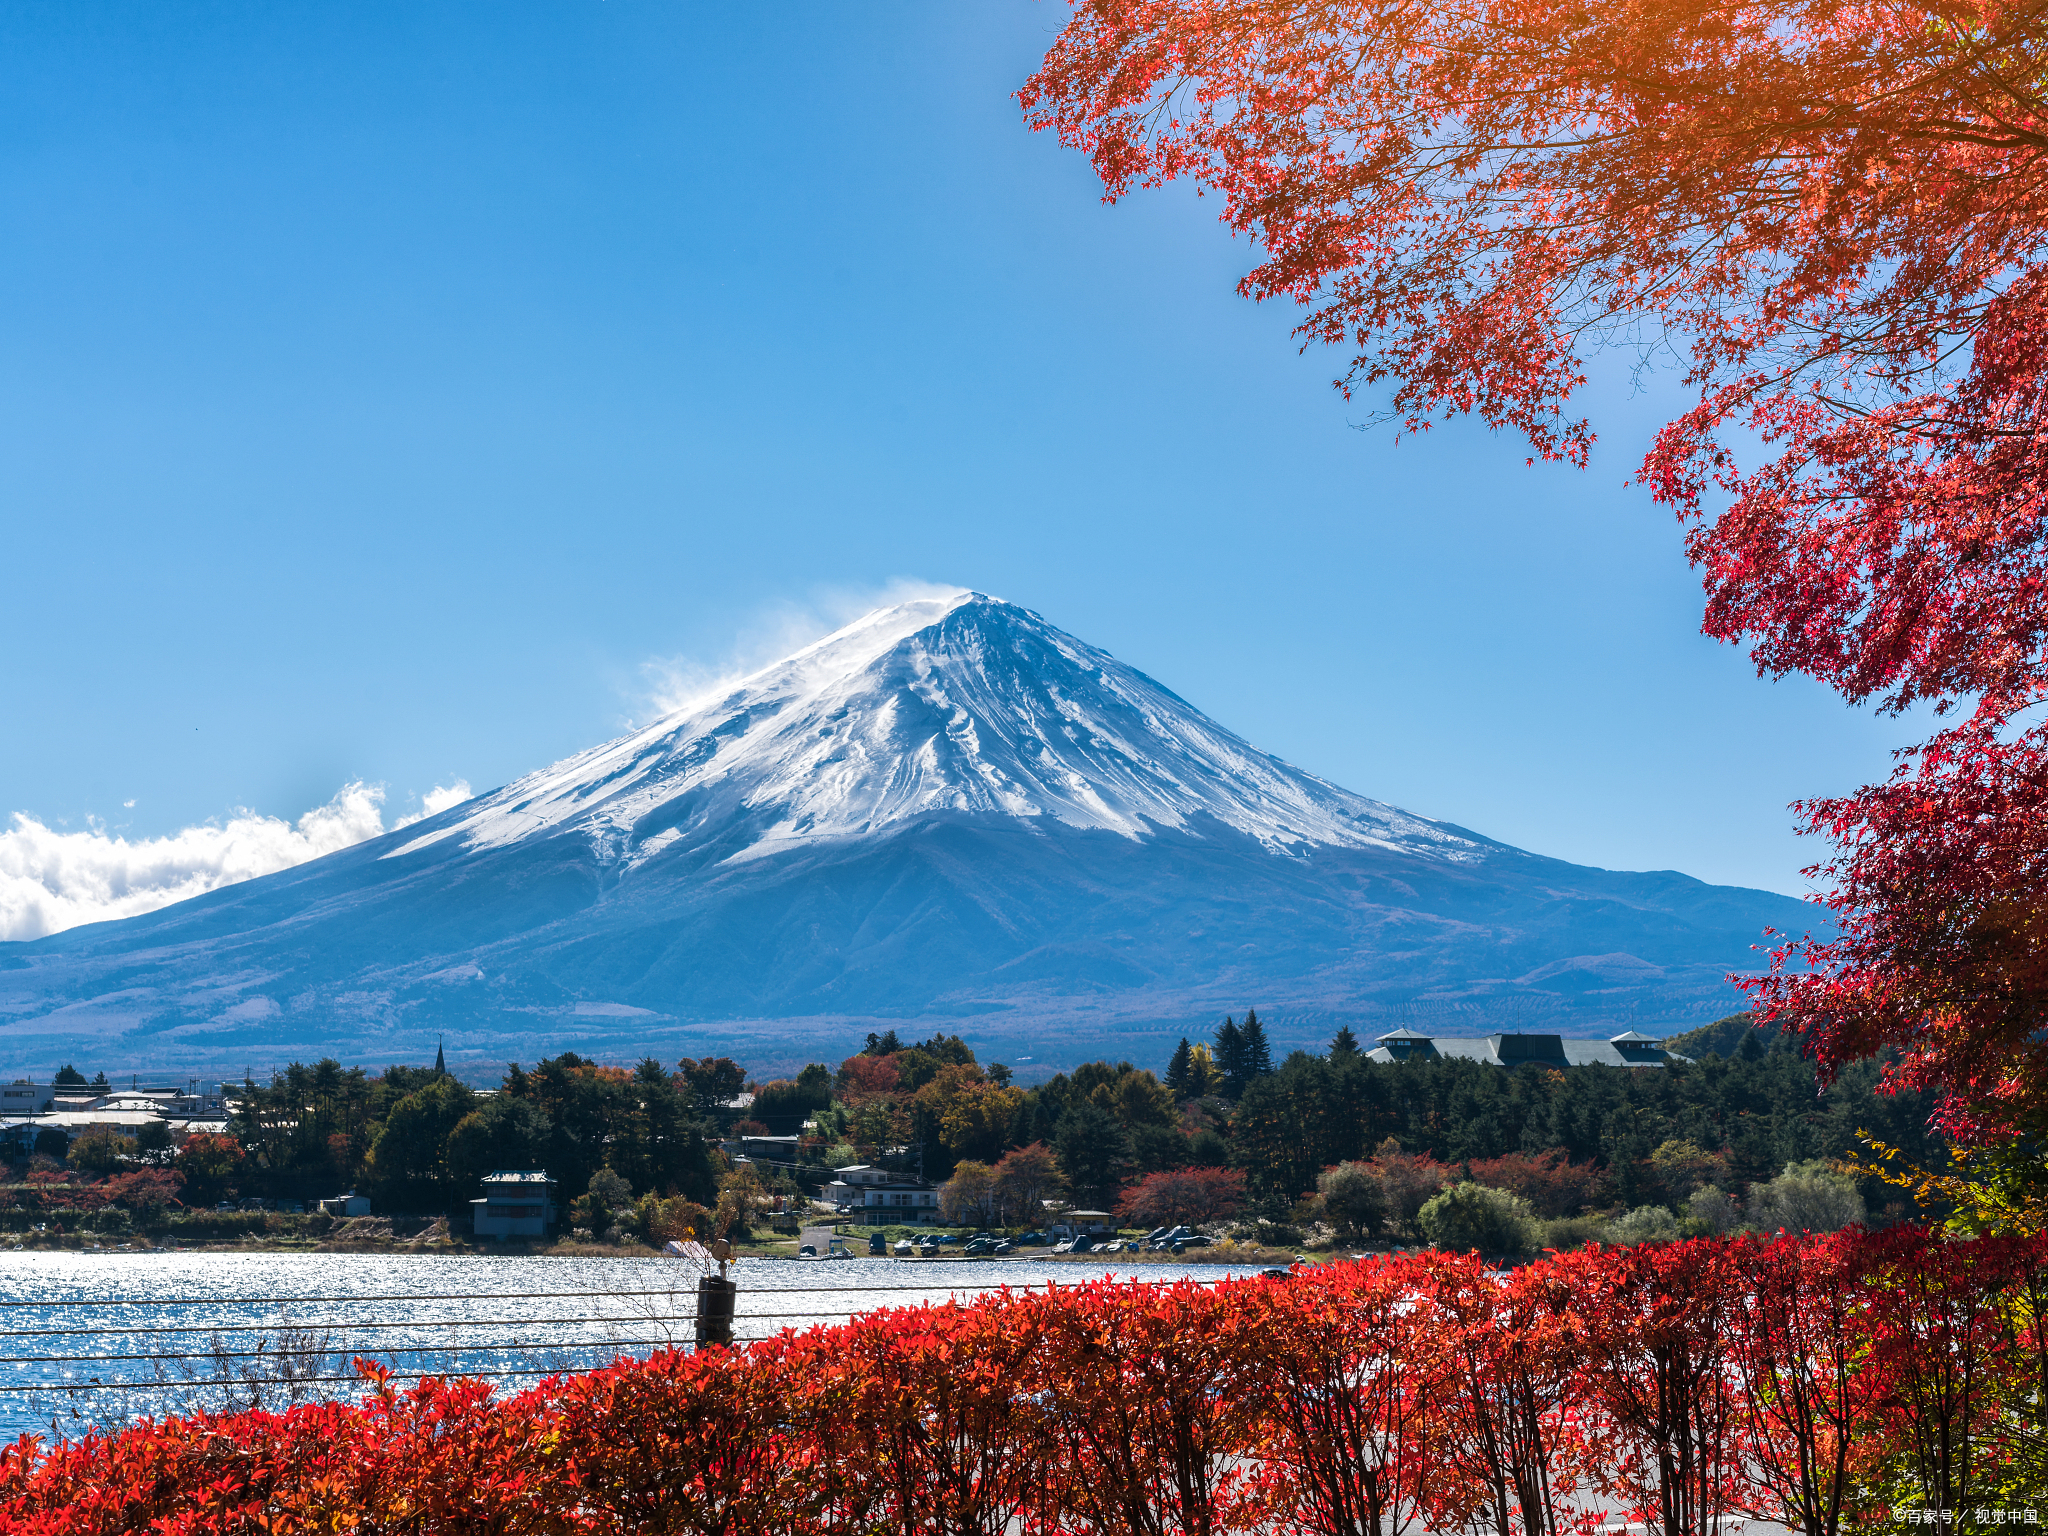 据网上资料了解到,日本政府一直在监测富士山的活动,并采取了各种措施